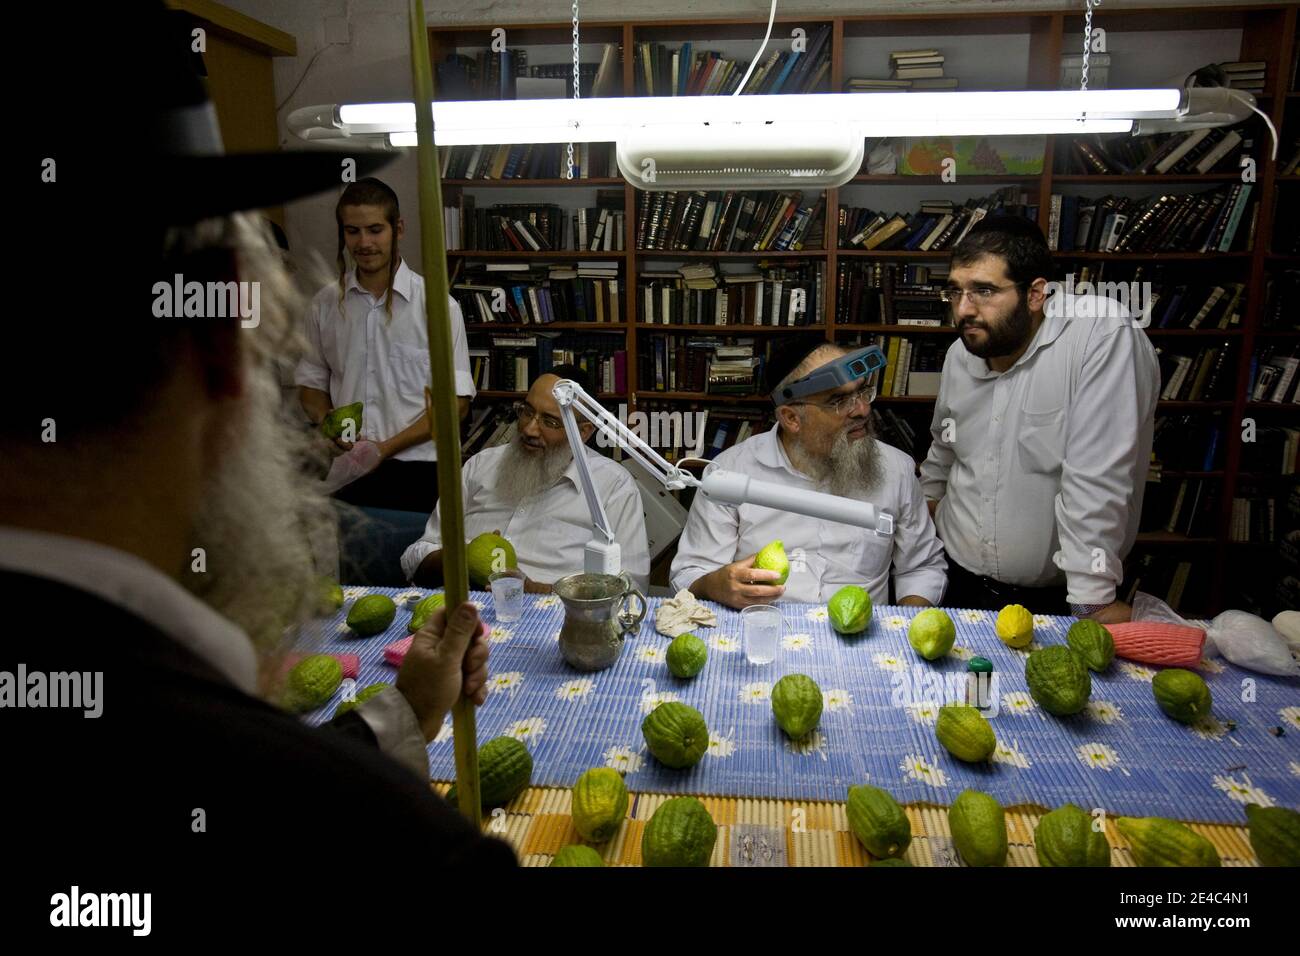 Ultra-orthodoxe jüdische Männer inspizieren Zitronen, oder Etrog in Hebräisch, eine der vier Arten, die während der Feier von Sukkot, das Fest der Tabernakel, in der Ultra-orthodoxen Mea Shearim Nachbarschaft von Jerusalem am 29. September 2009 verwendet werden. Neben dem "etrog" sind die drei anderen Arten die "hadass" (Myrte), "Aravah" (Weide) und "Lulav" (Dattelpalmfond), die alle in einem winkenden Ritual während Sukkot oder dem Laubhüttenfest verwendet werden. Der siebentägige Feiertag von Sukkot erinnert an die 40 Jahre, in denen die alten Israeliten die Wüste wanderten, die in Hütten nach dem Exodu lebten Stockfoto